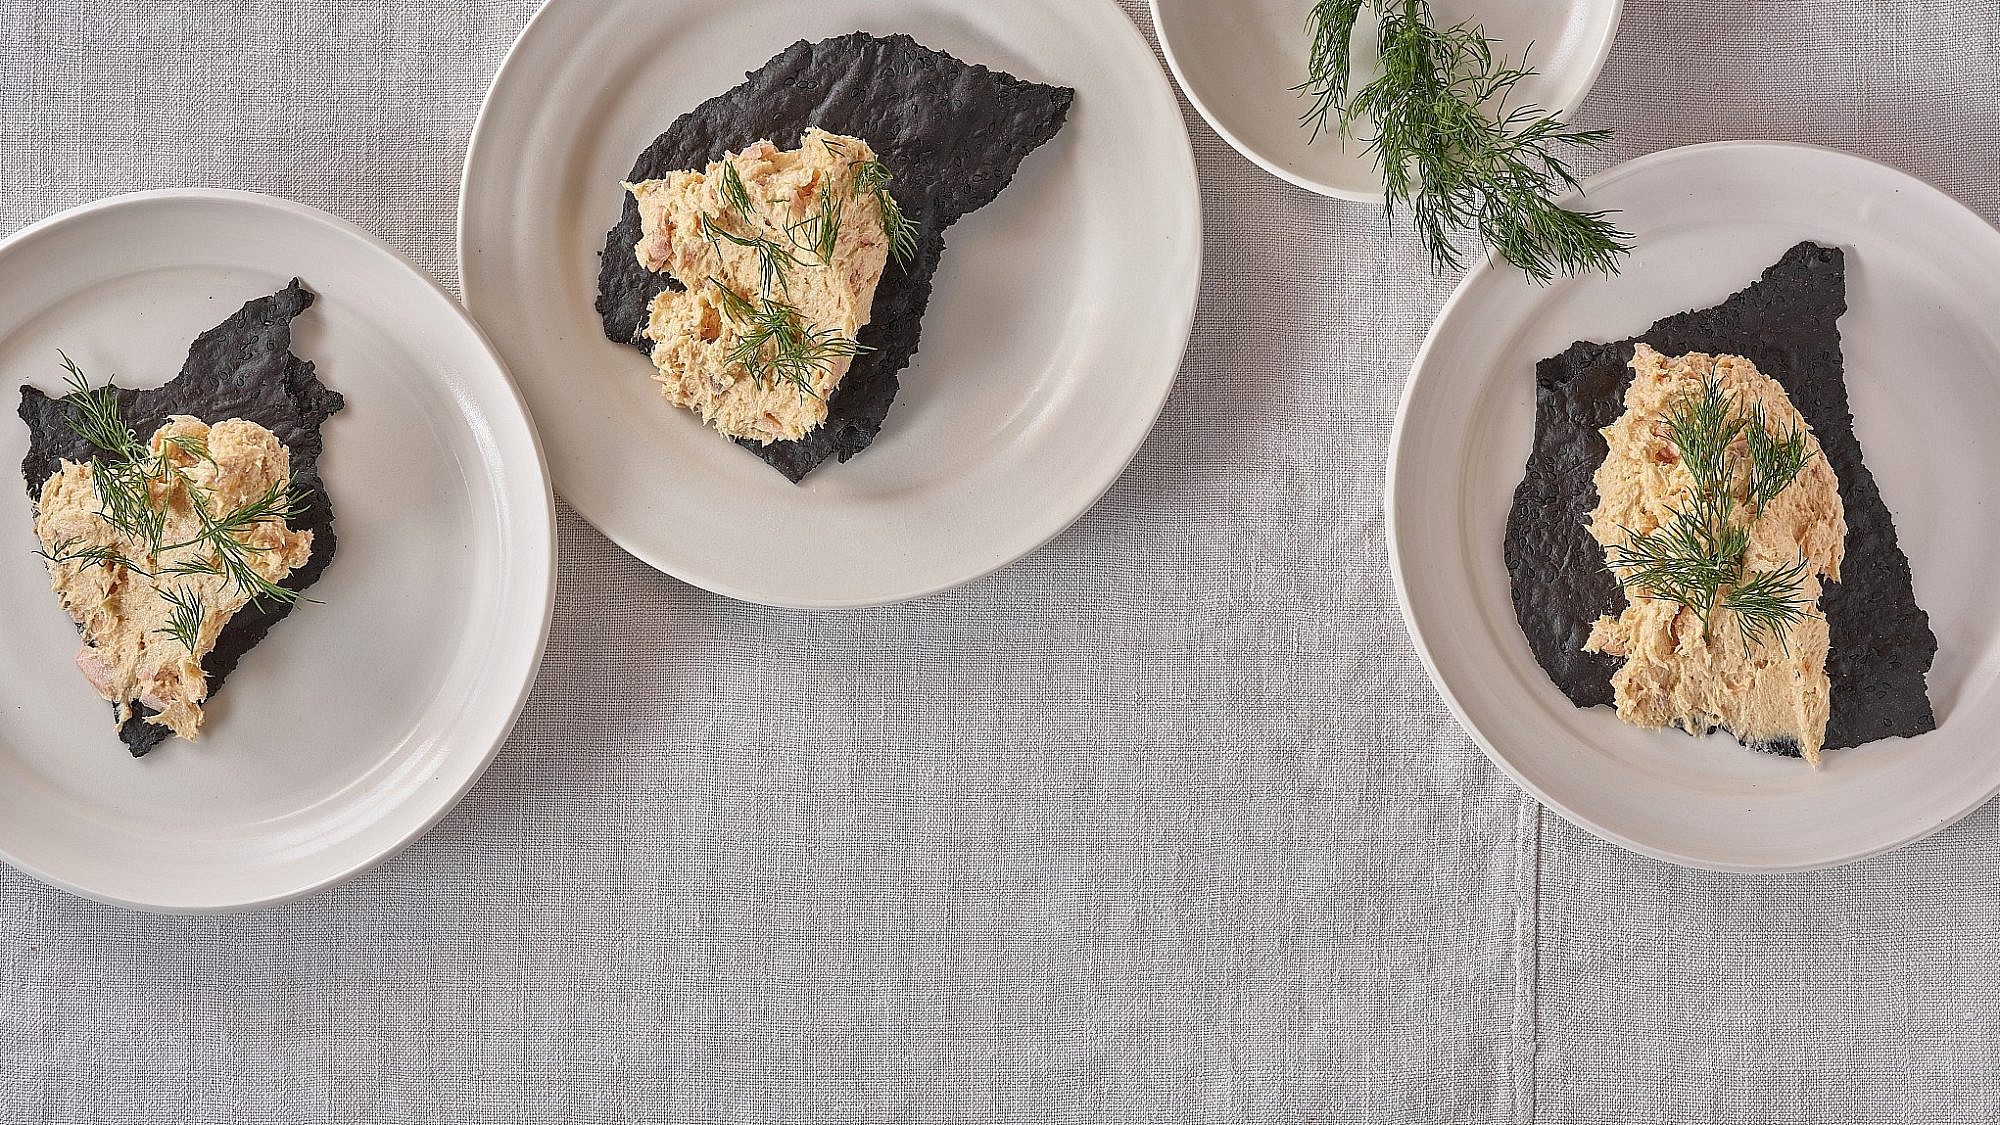 רייט סלמון וחמאה של שף חגי לרנר. צילום: אנטולי מיכאלו. סטיילינג: דיאנה לינדר